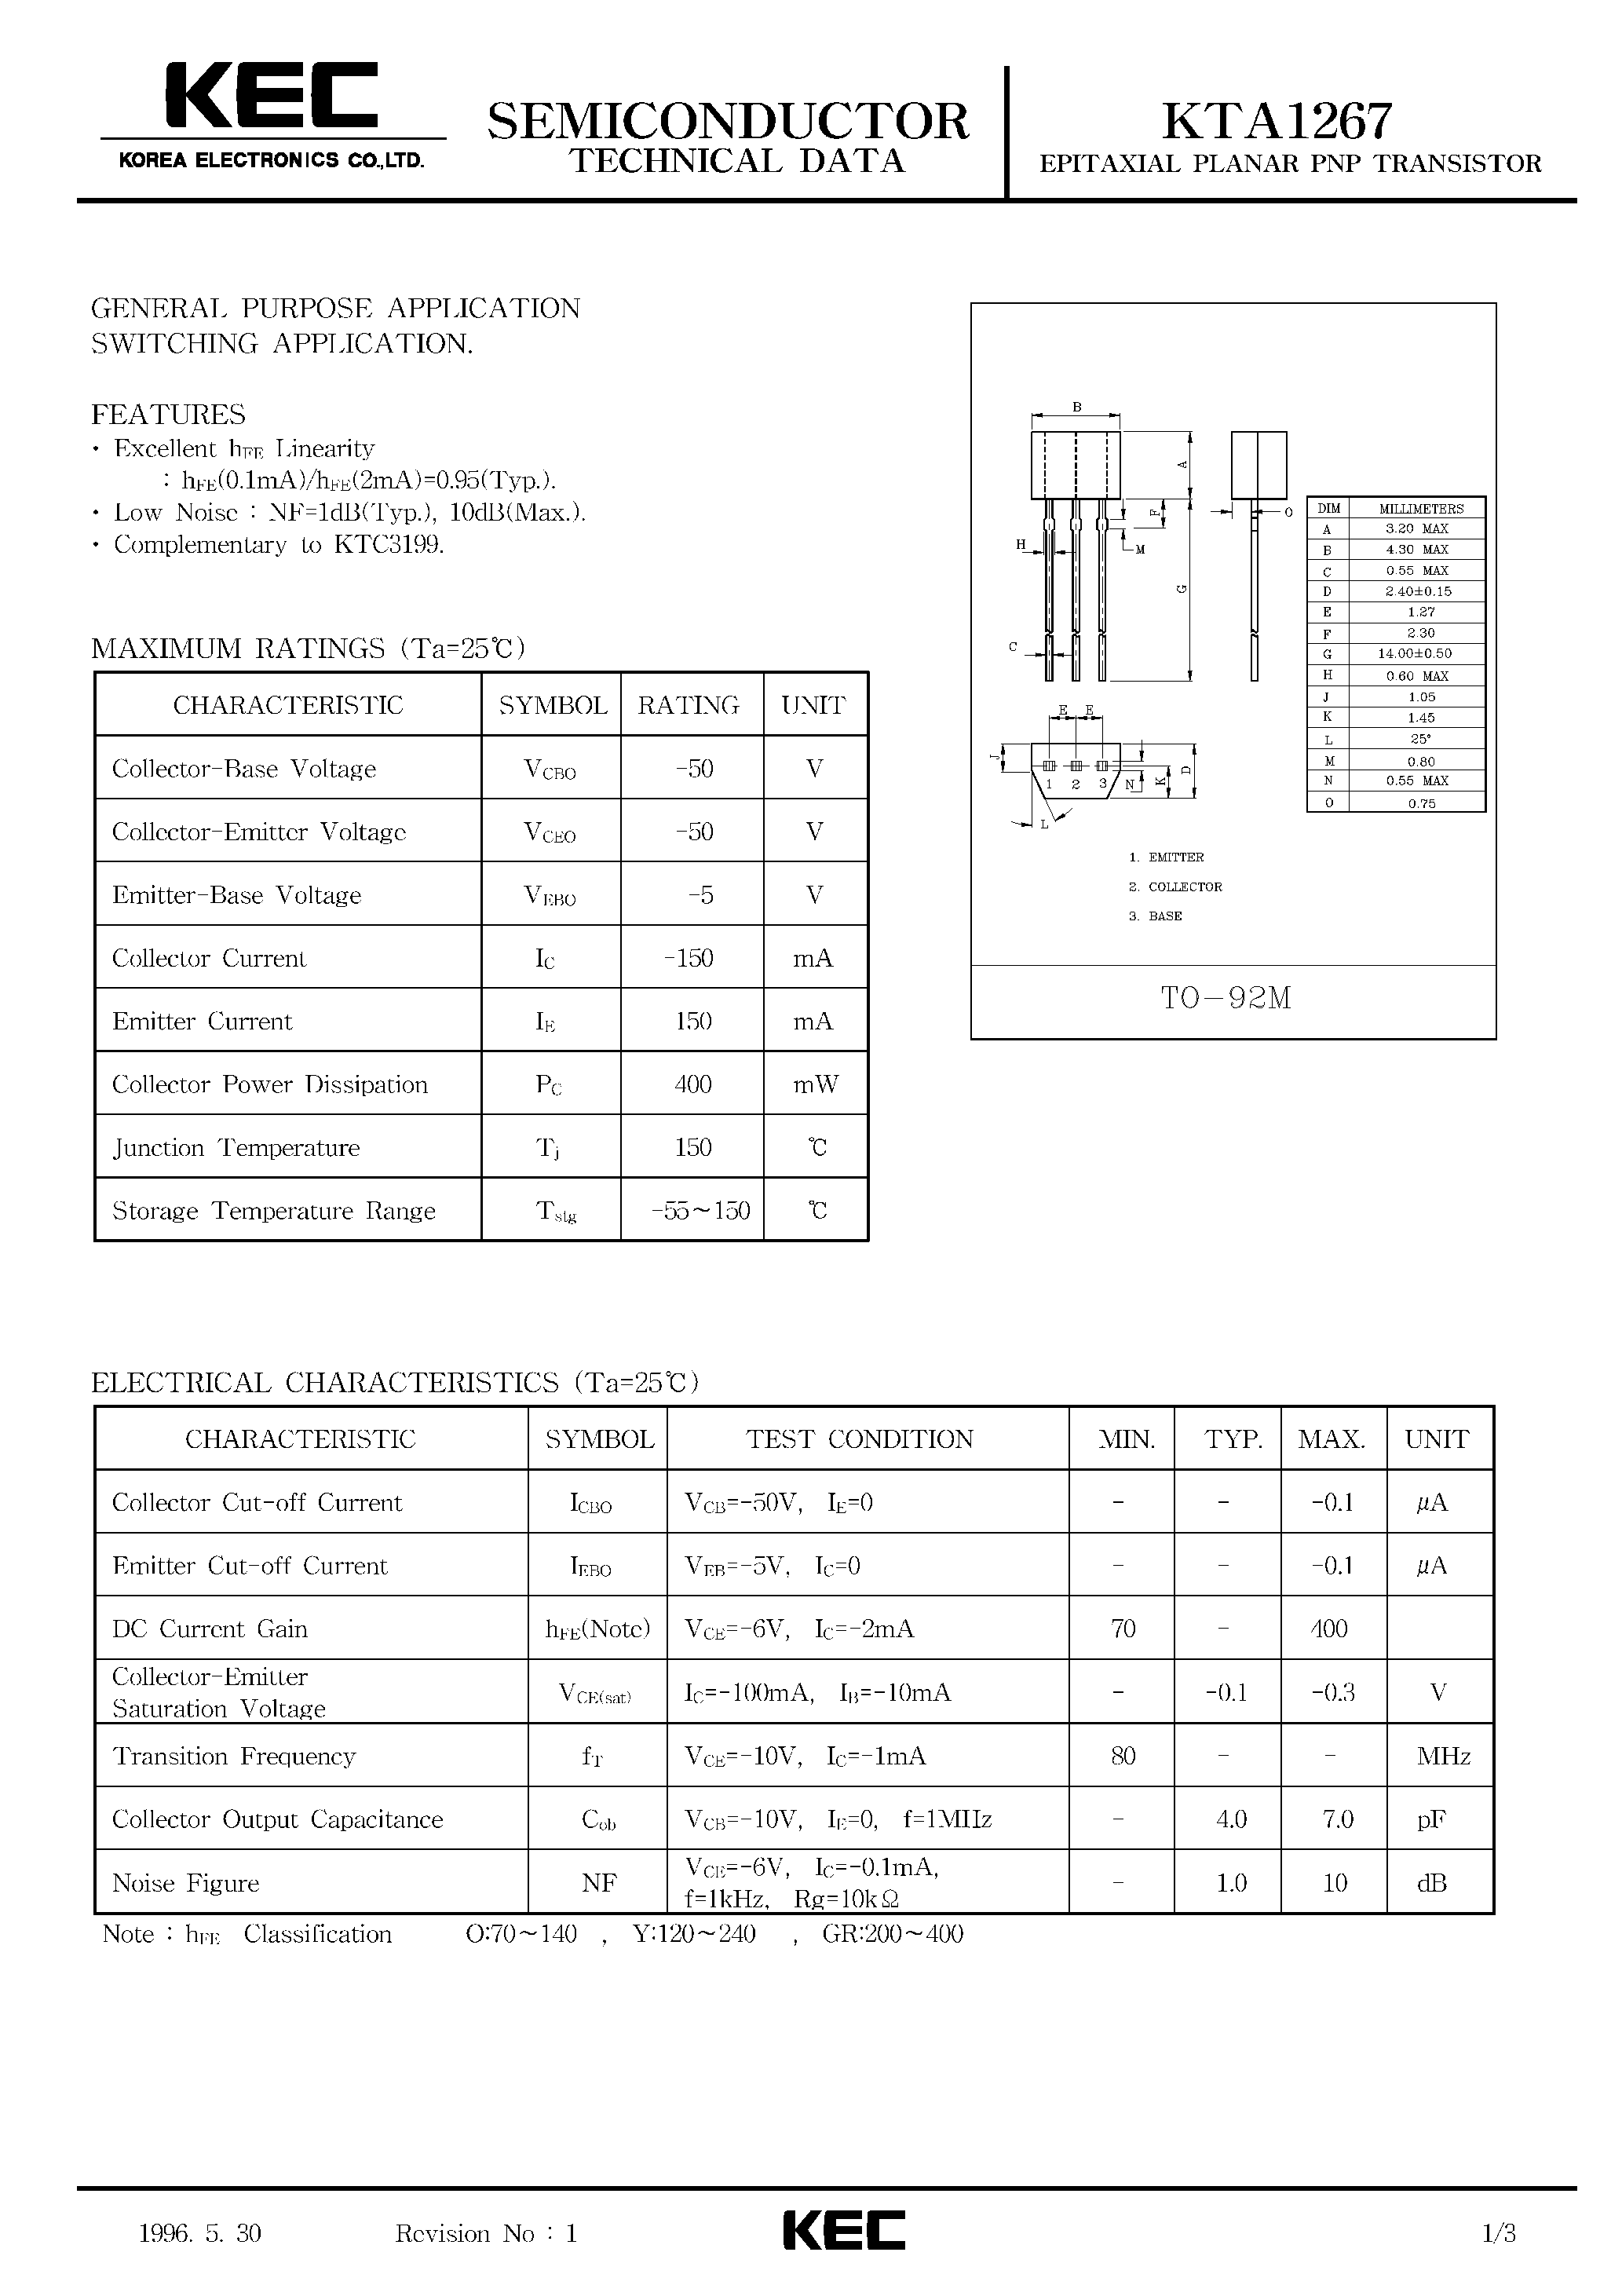 Datasheet KTA1267 - EPITAXIAL PLANAR PNP TRANSISTOR (GENERAL PURPOSE/ SWITCHING) page 1